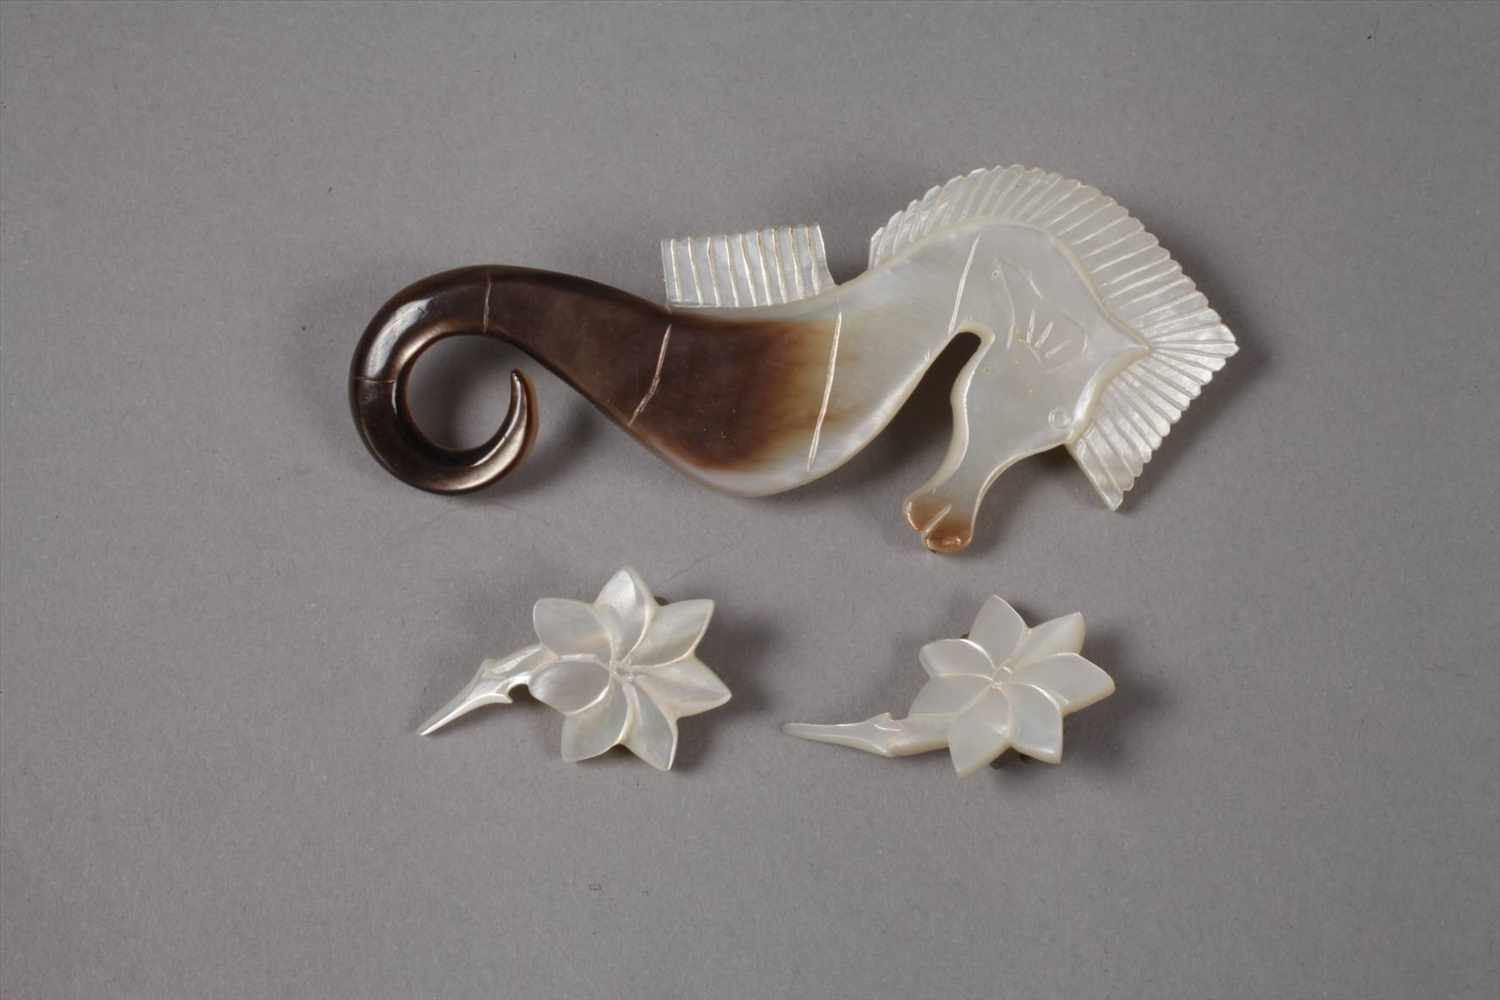 Schmuckset Perlmutterum 1930, bestehend aus Collier, Brosche in Form eines Seepferdchens und einem - Image 4 of 4